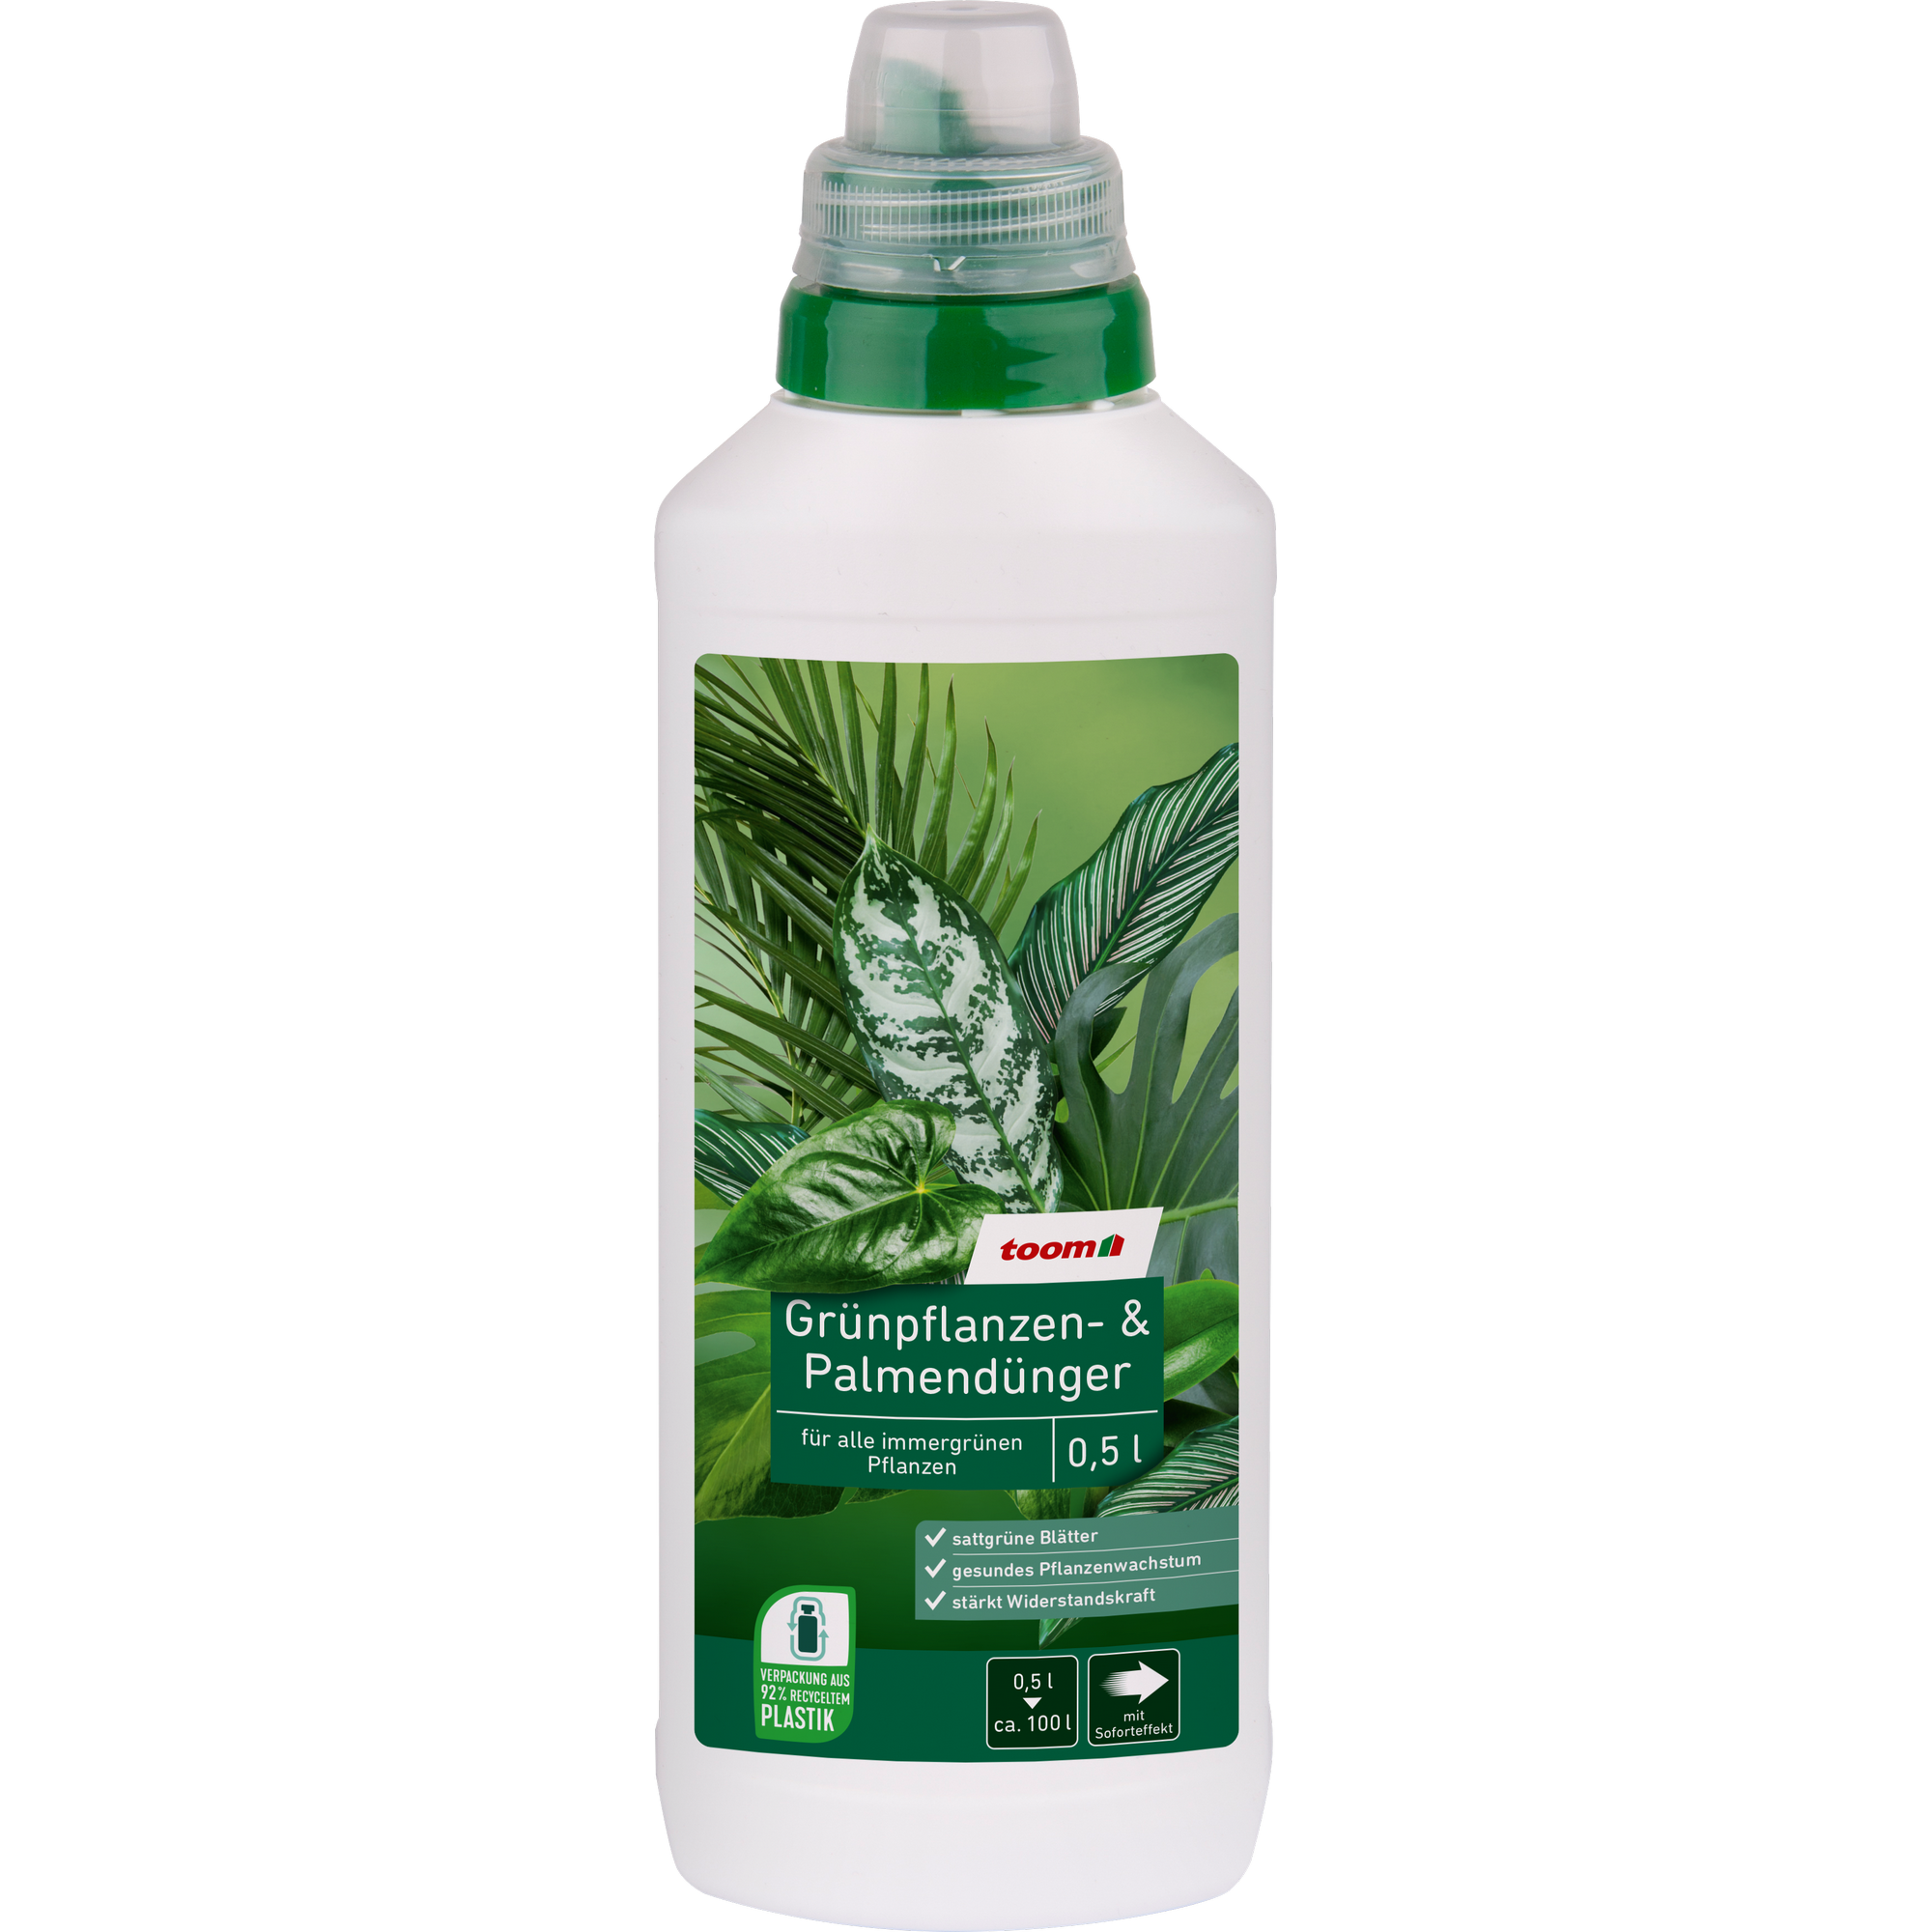 Grünpflanzen- und Palmendünger 500 ml + product picture